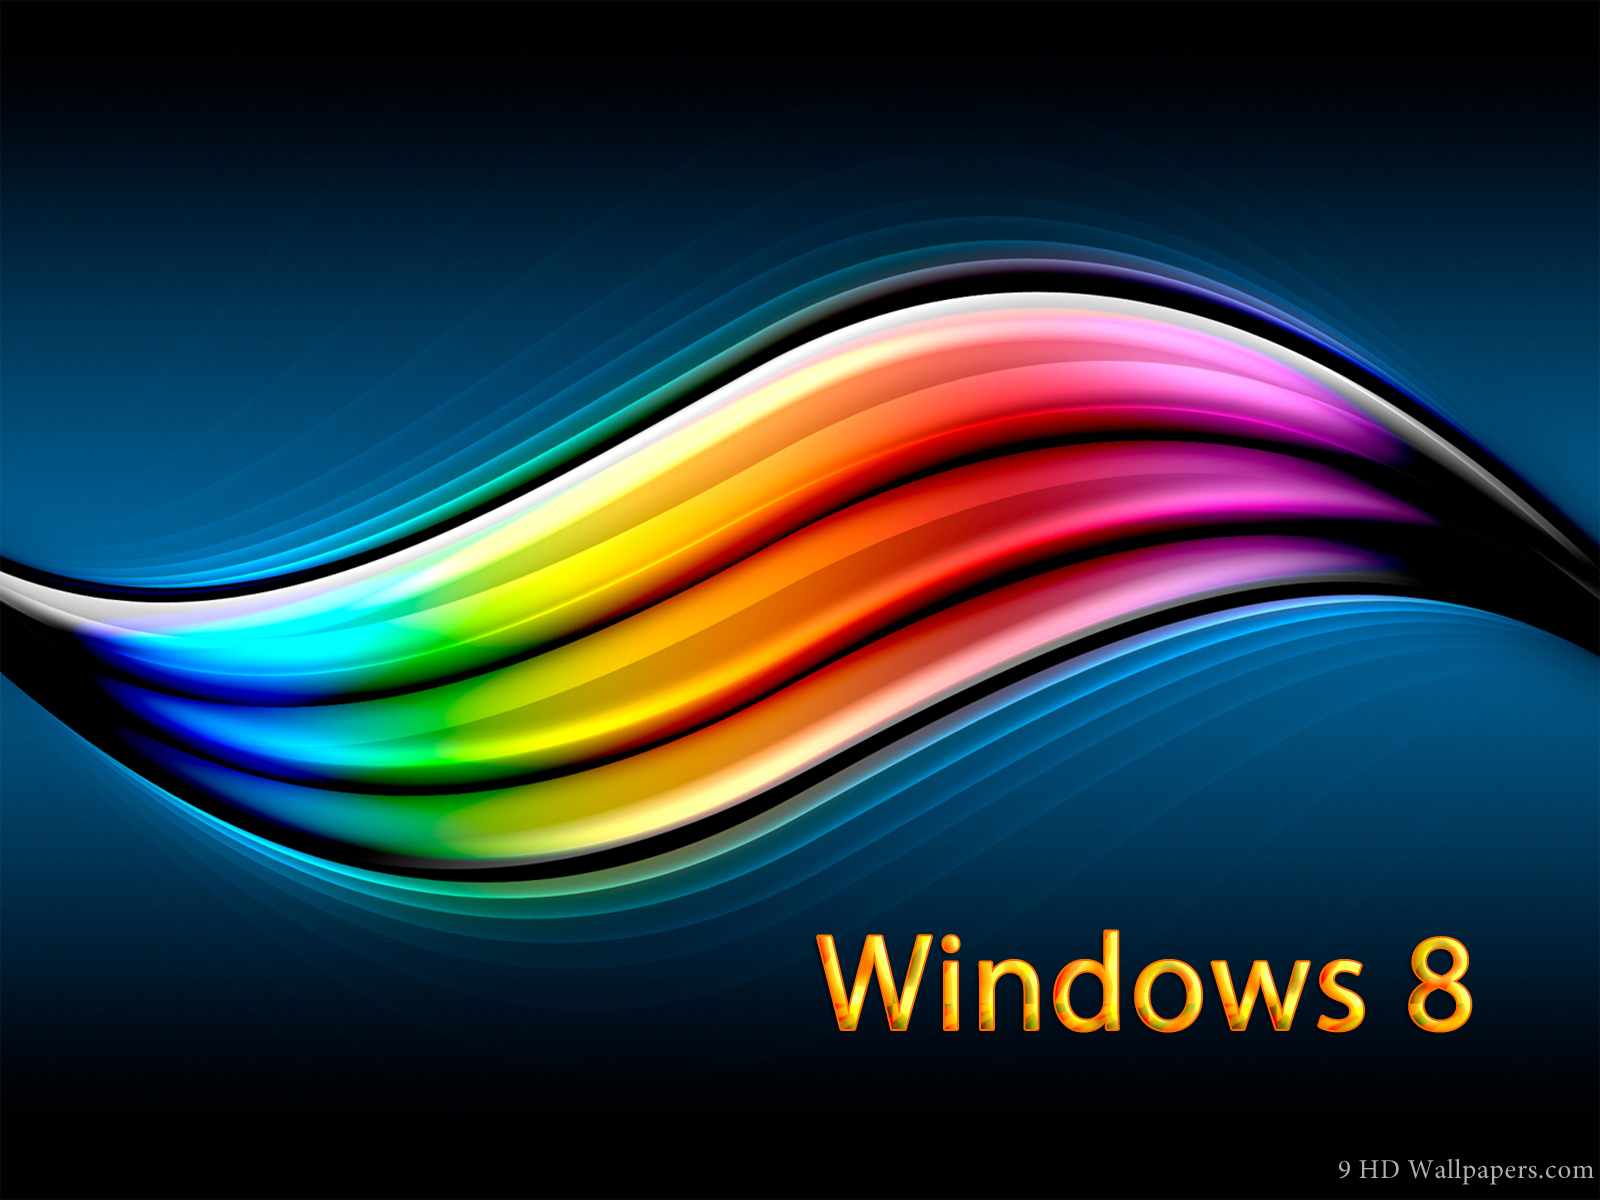 49+] Wallpapers For Windows 8 Desktop - WallpaperSafari